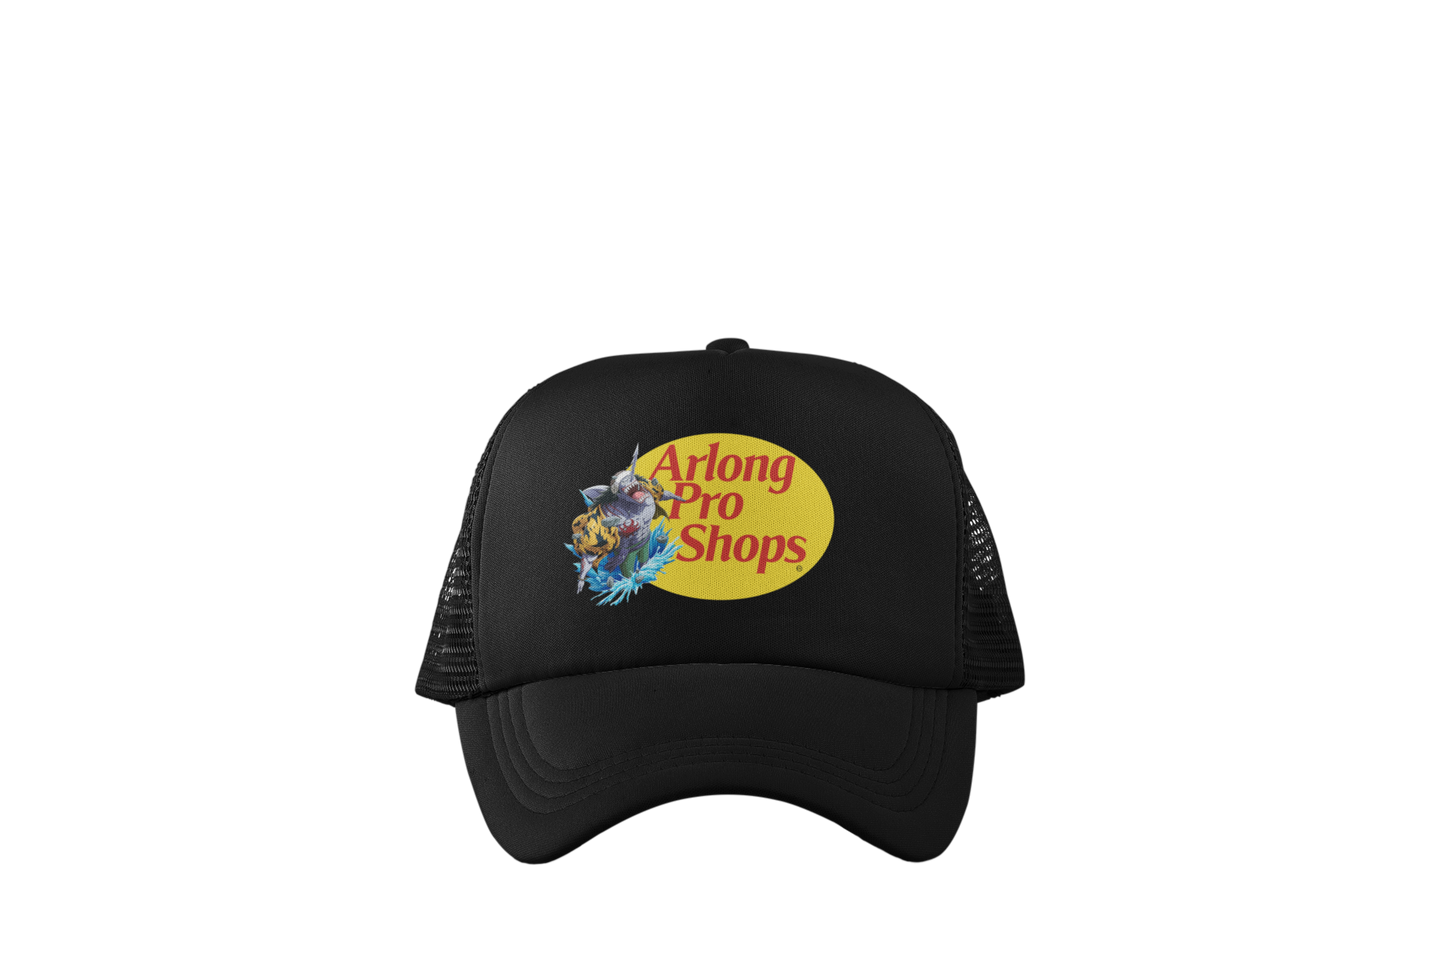 Arlong Pro Shops Trucker Hats